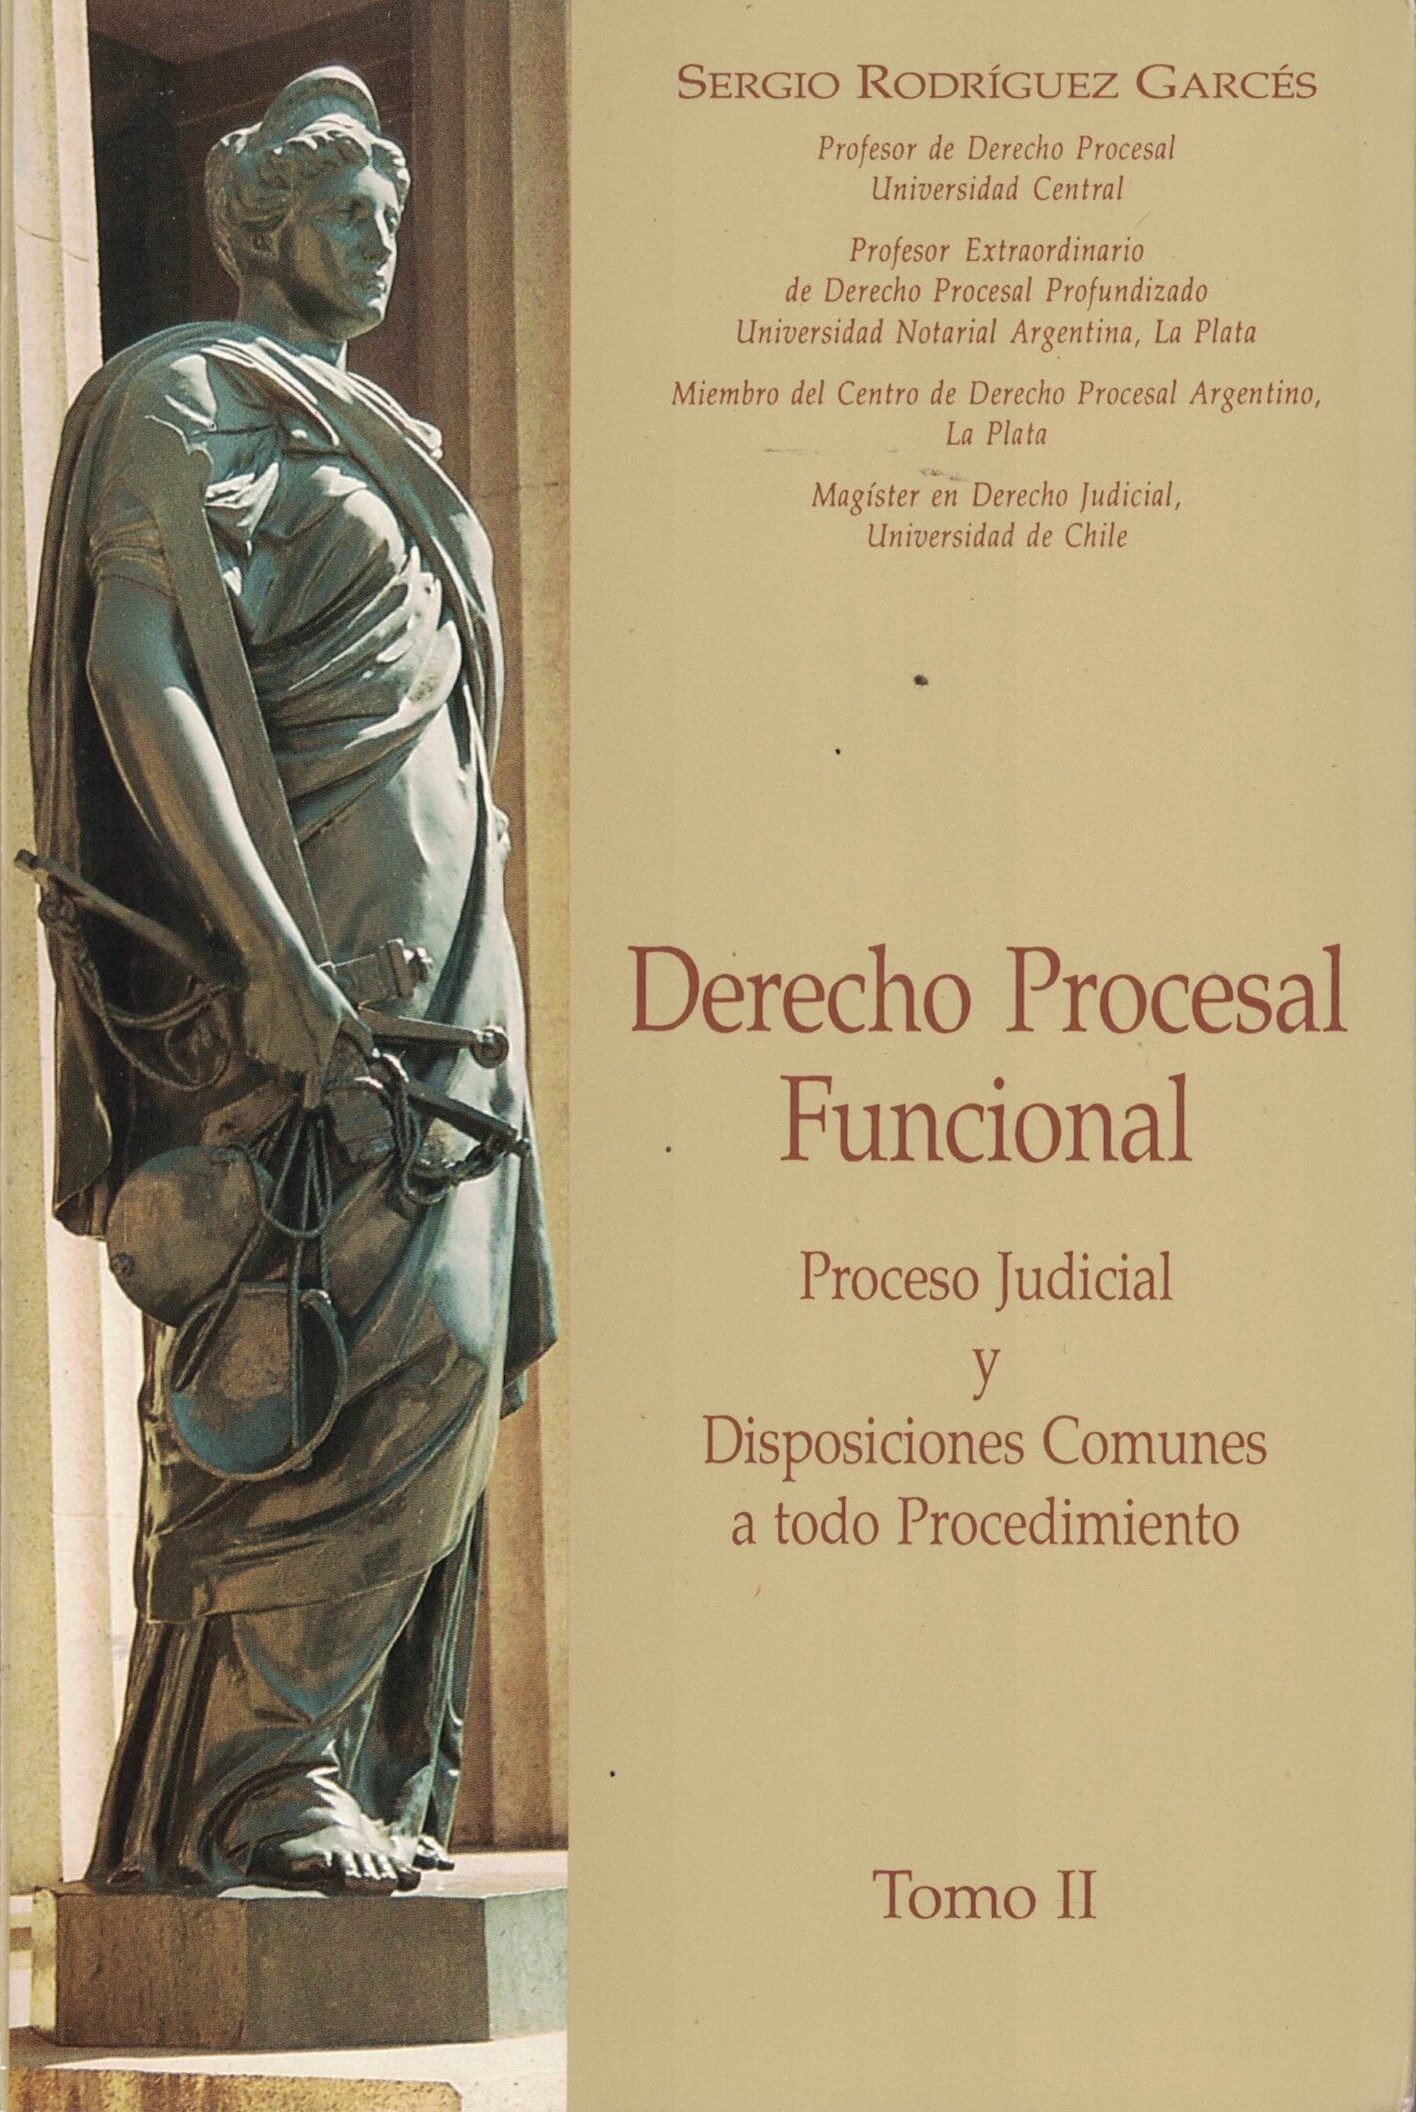 Derecho Procesal Funcional - Proceso Judicial y Disposiciones Comunes a Todo Procedimiento - Tomo II